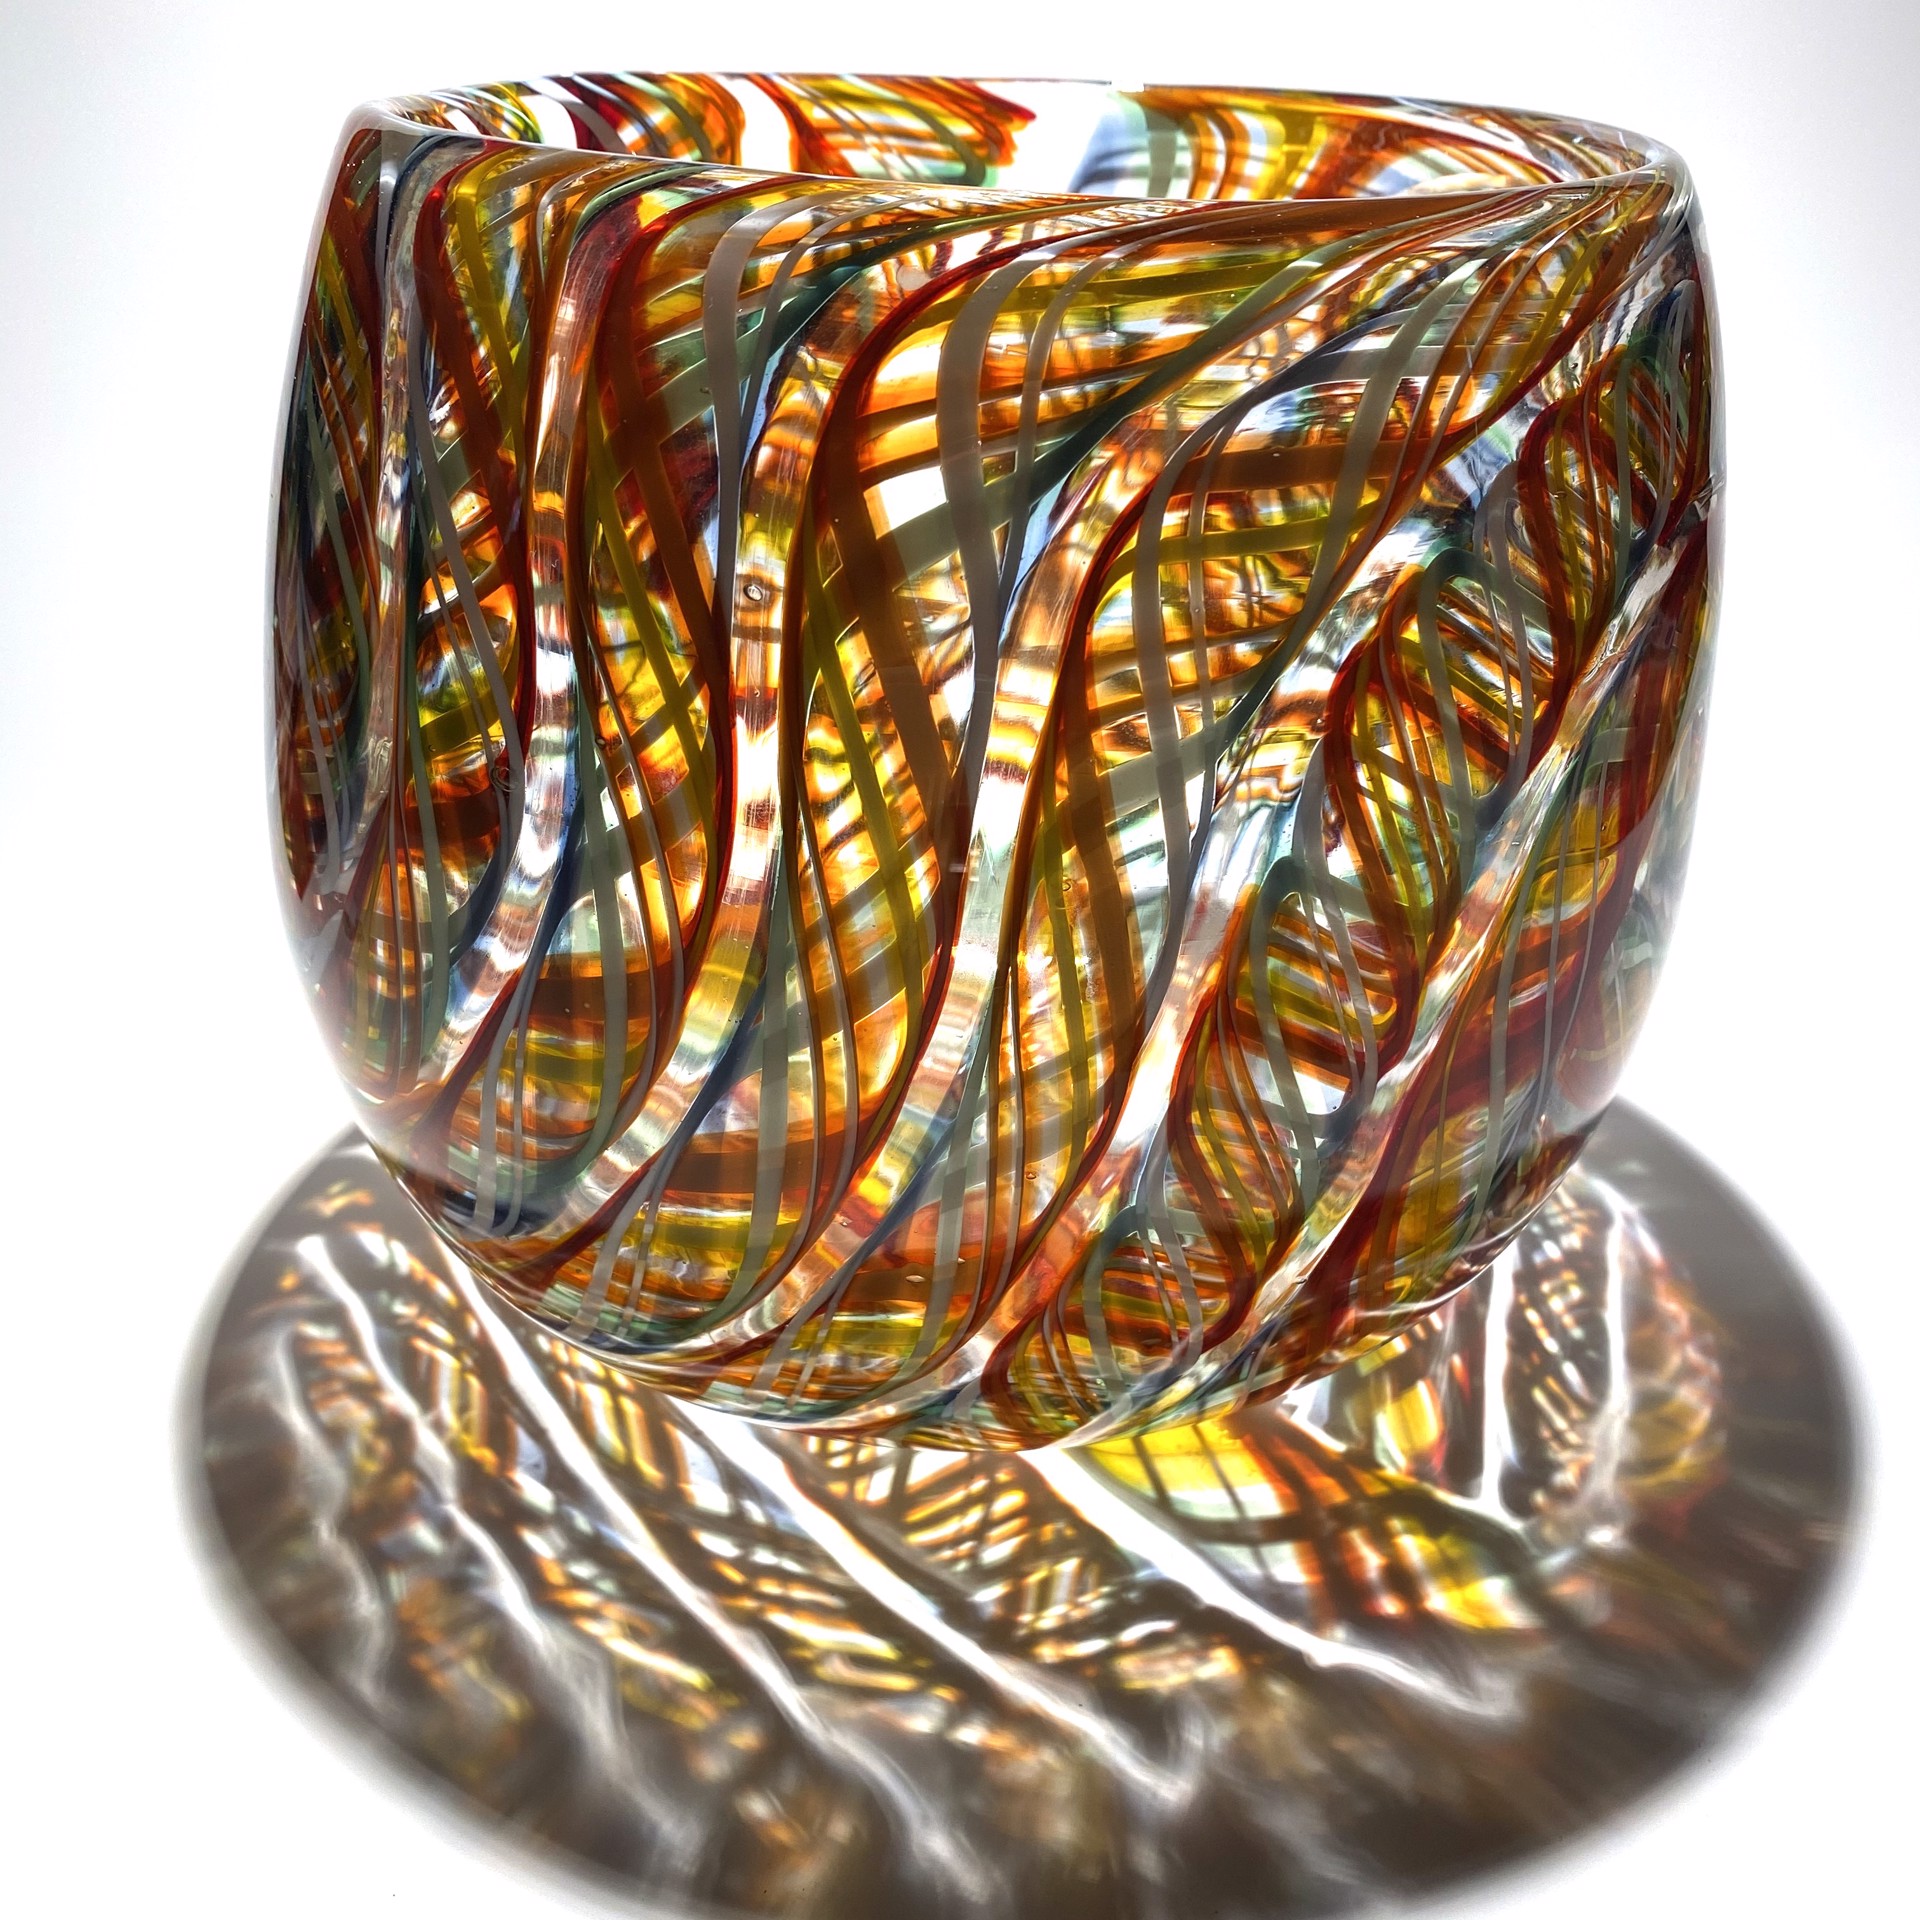 Vessel-Candy Stripe JG6 by John Glass